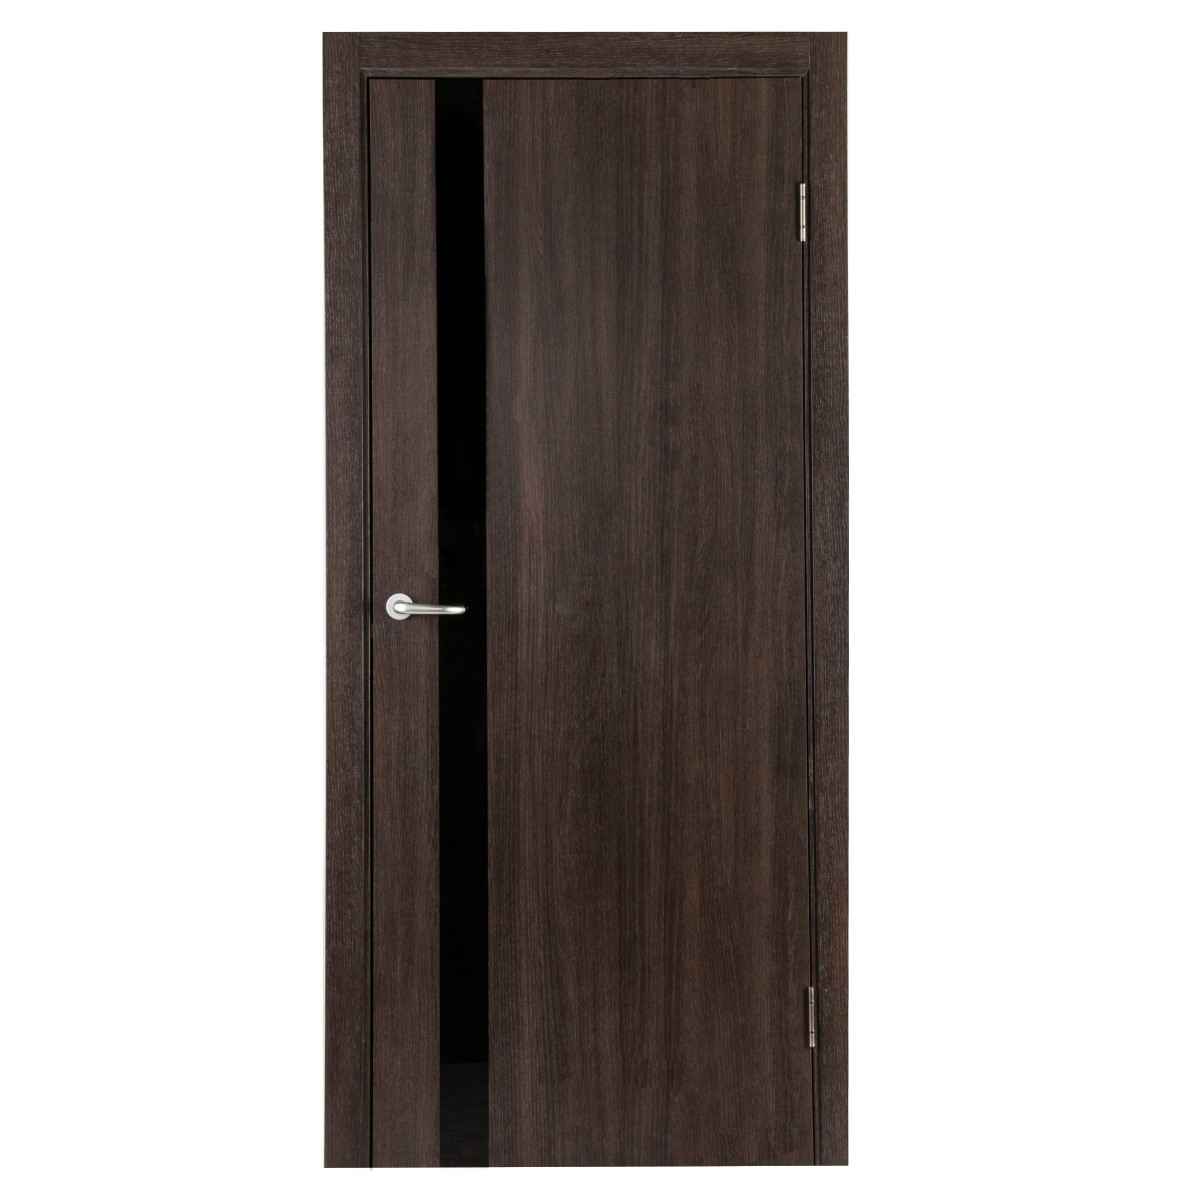 Дверь межкомнатная глухая с замком и петлями в комплекте Мирра 90x200 см, Hardflex, цвет дуб кастелло